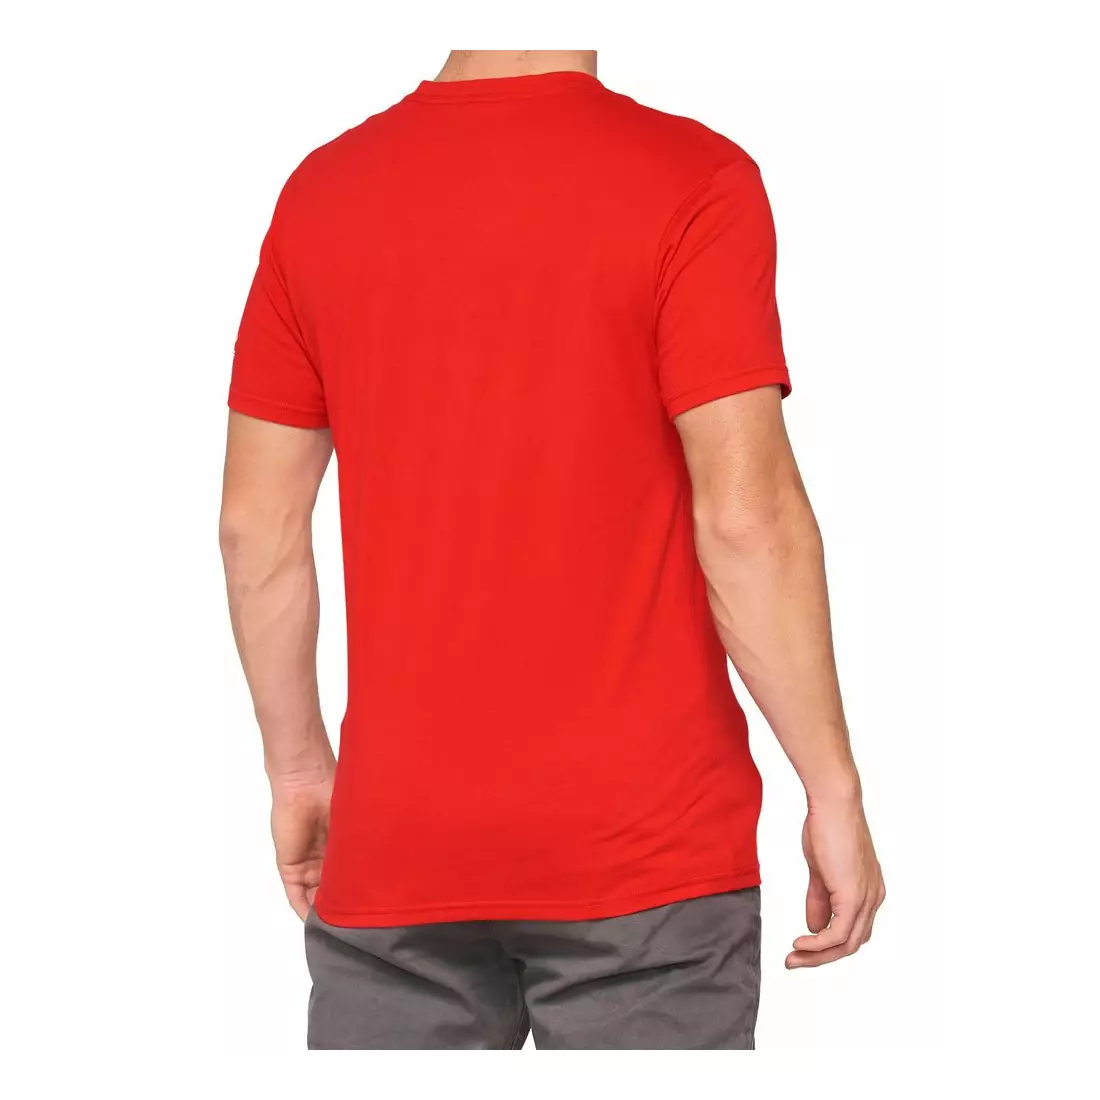 100% koszulka sportowa męska z krótkim rękawem TILLER red 